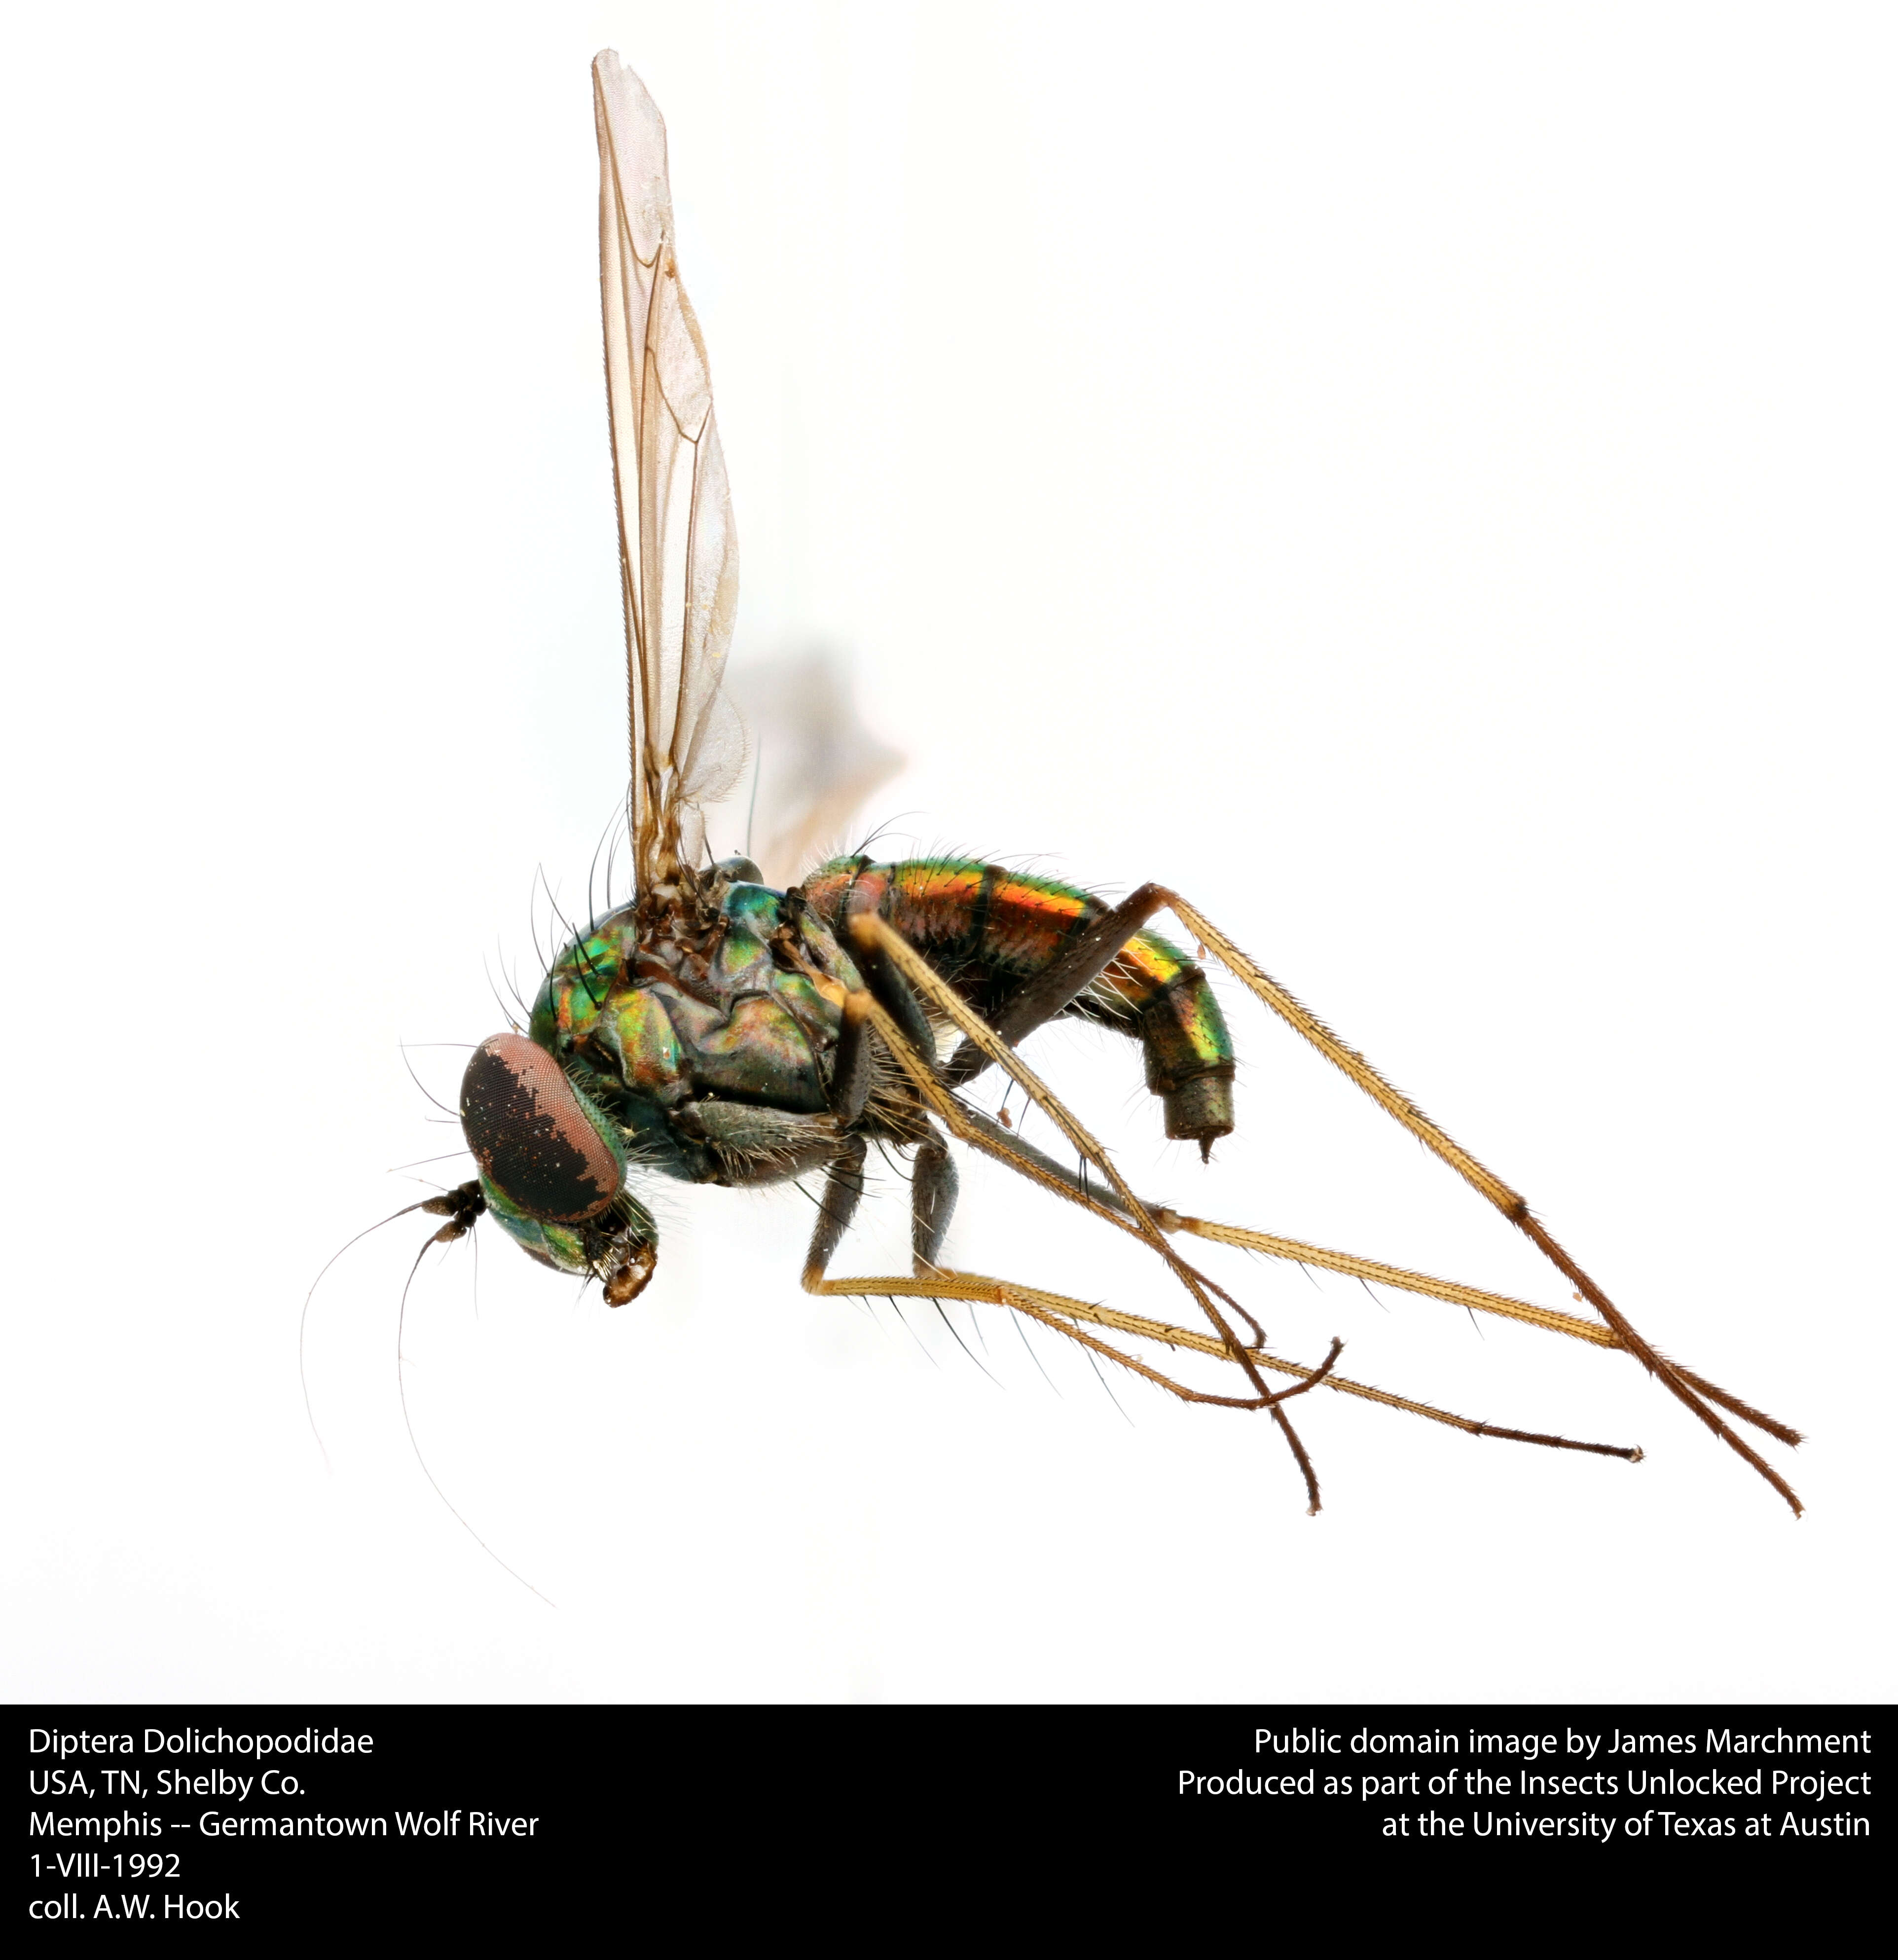 Image of long-legged fly